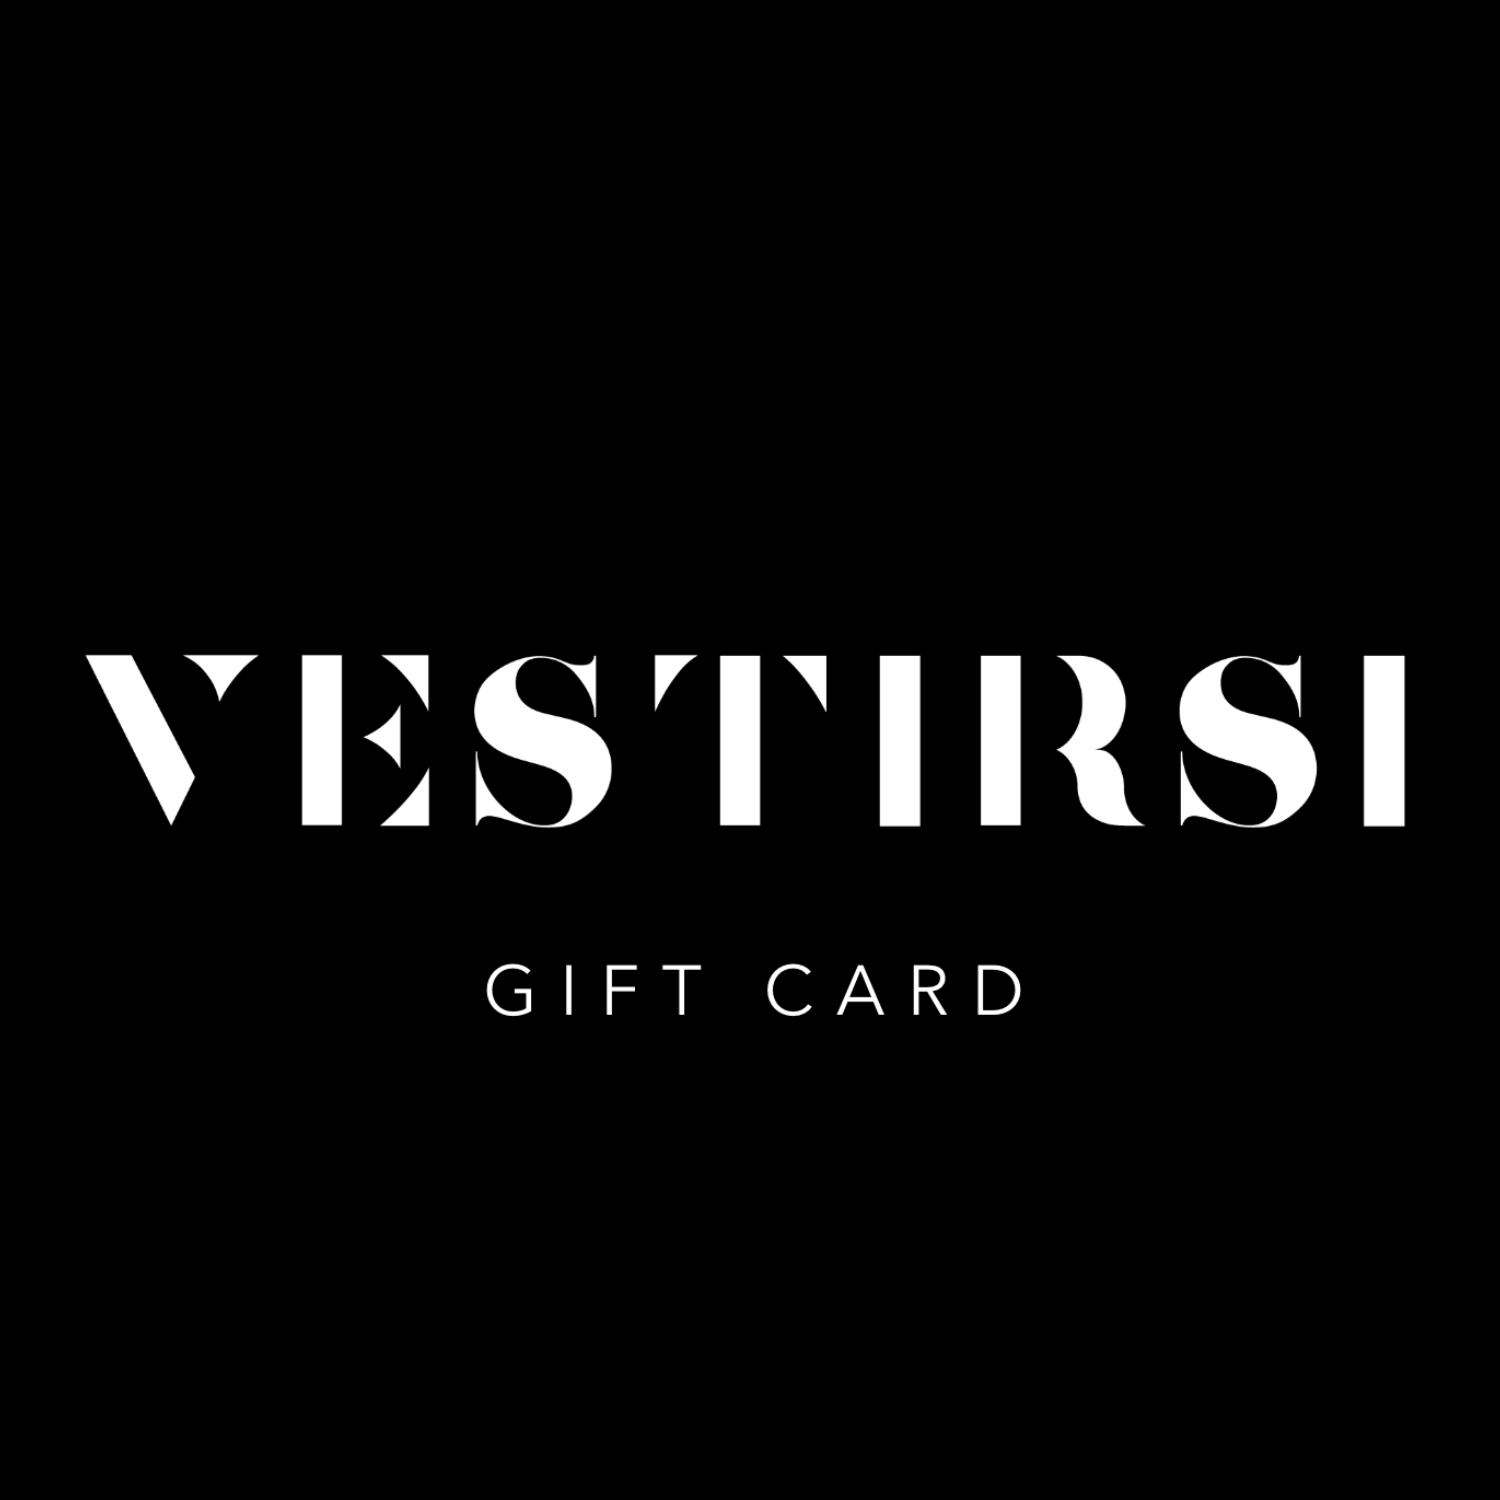 Gift Card - VESTIRSI